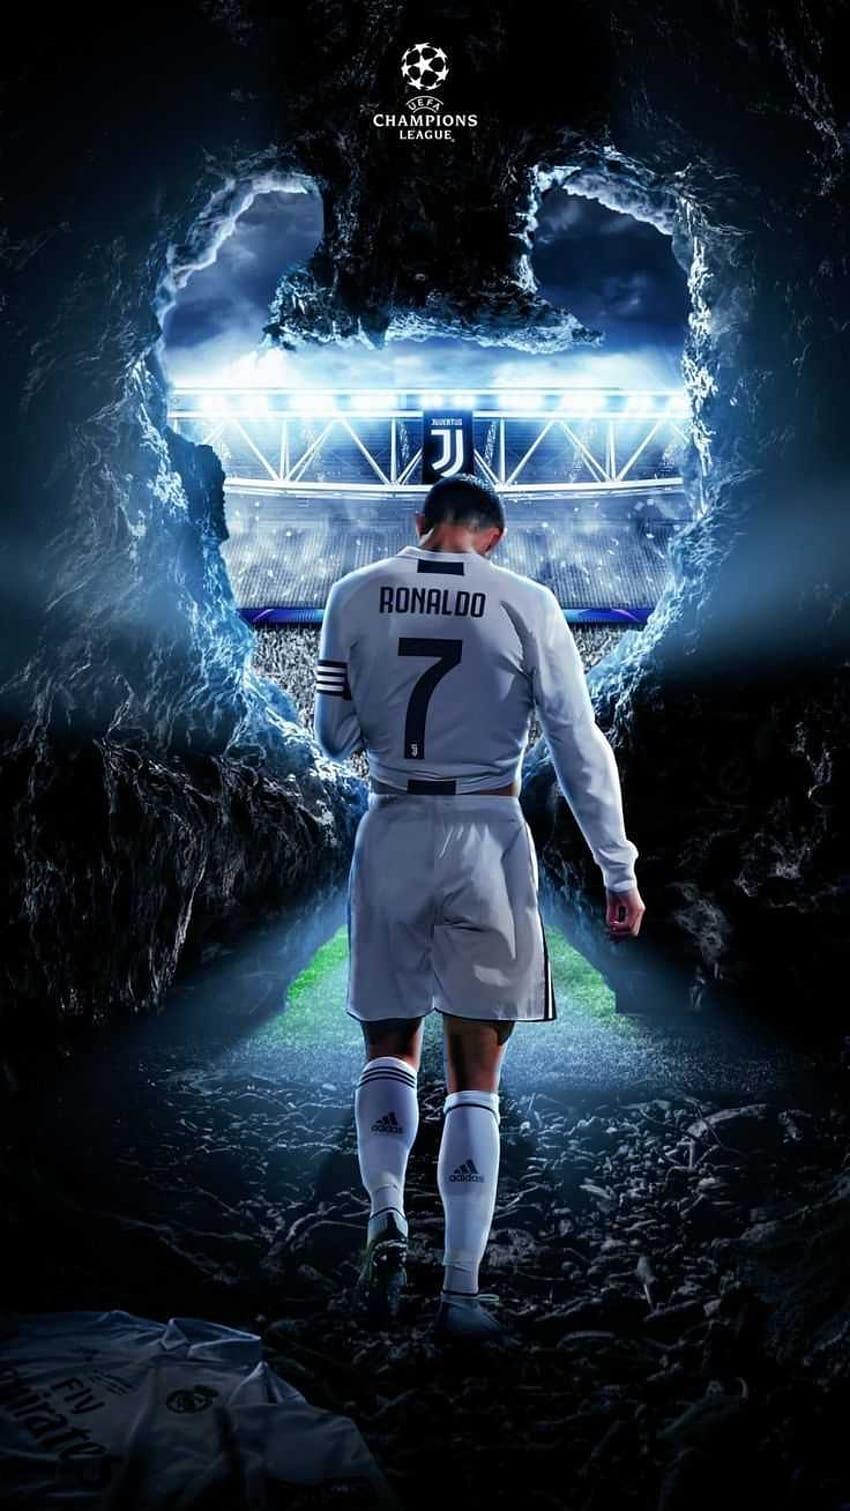 Hình nền iPhone Cristiano Ronaldo HD là sự lựa chọn hoàn hảo cho những người yêu thích bóng đá và Ronaldo. Những bức ảnh này đẹp và sắc nét, mang đến cho bạn cảm giác thật rực rỡ khi sử dụng điện thoại của mình. Nếu bạn đang tìm kiếm một hình nền độc đáo và đẹp cho iPhone của mình, đây chính là lựa chọn hoàn hảo.